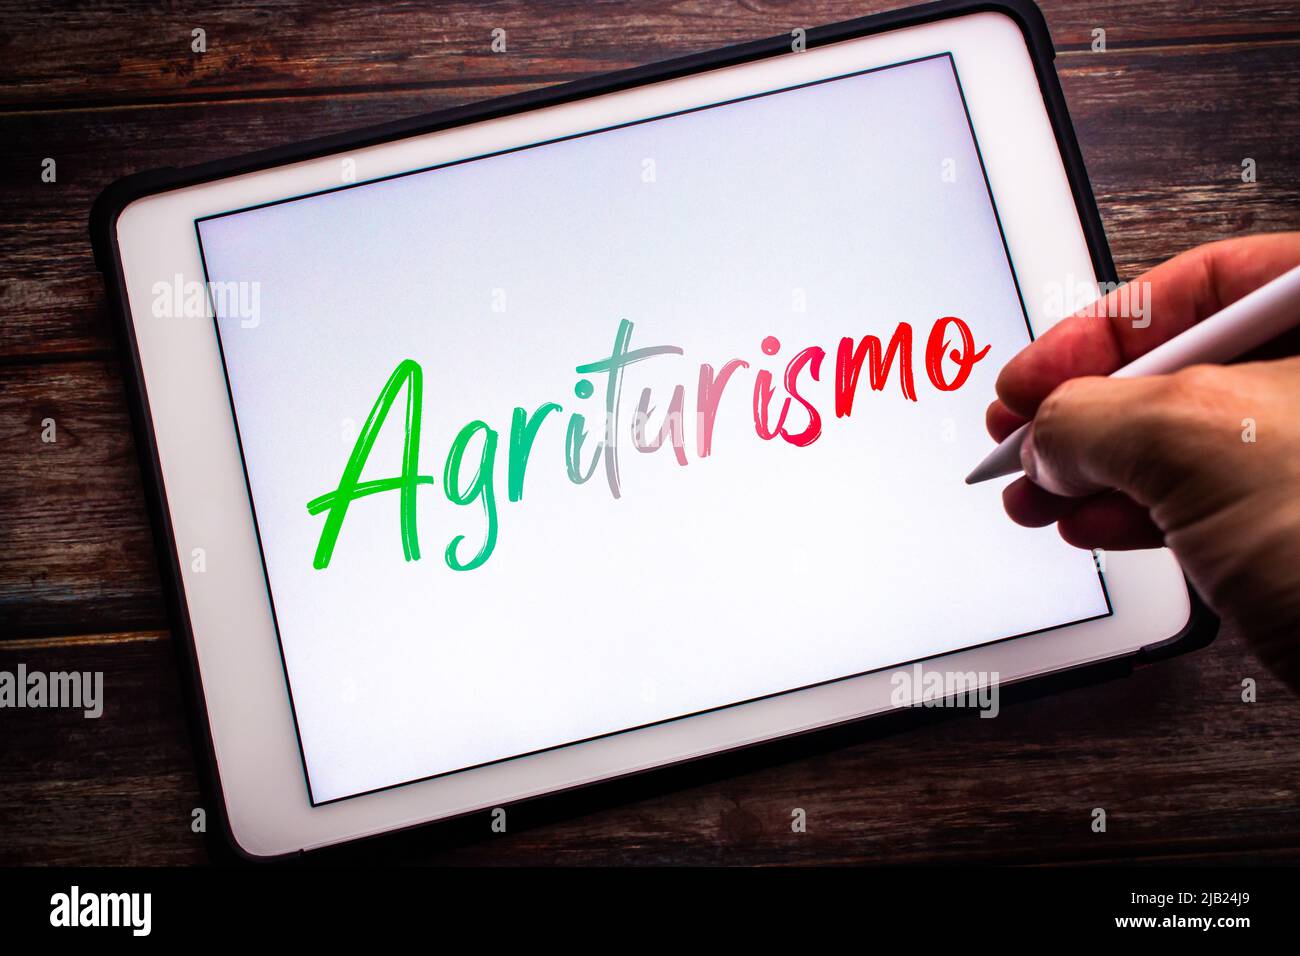 Konzeptuelles Zeichen von Agriturismo, die italienische Wortkombination agricoltura (Landwirtschaft) & turismo (Tourismus), auf einem Tablet auf einem Tisch. Mann mit einem Stift Stockfoto